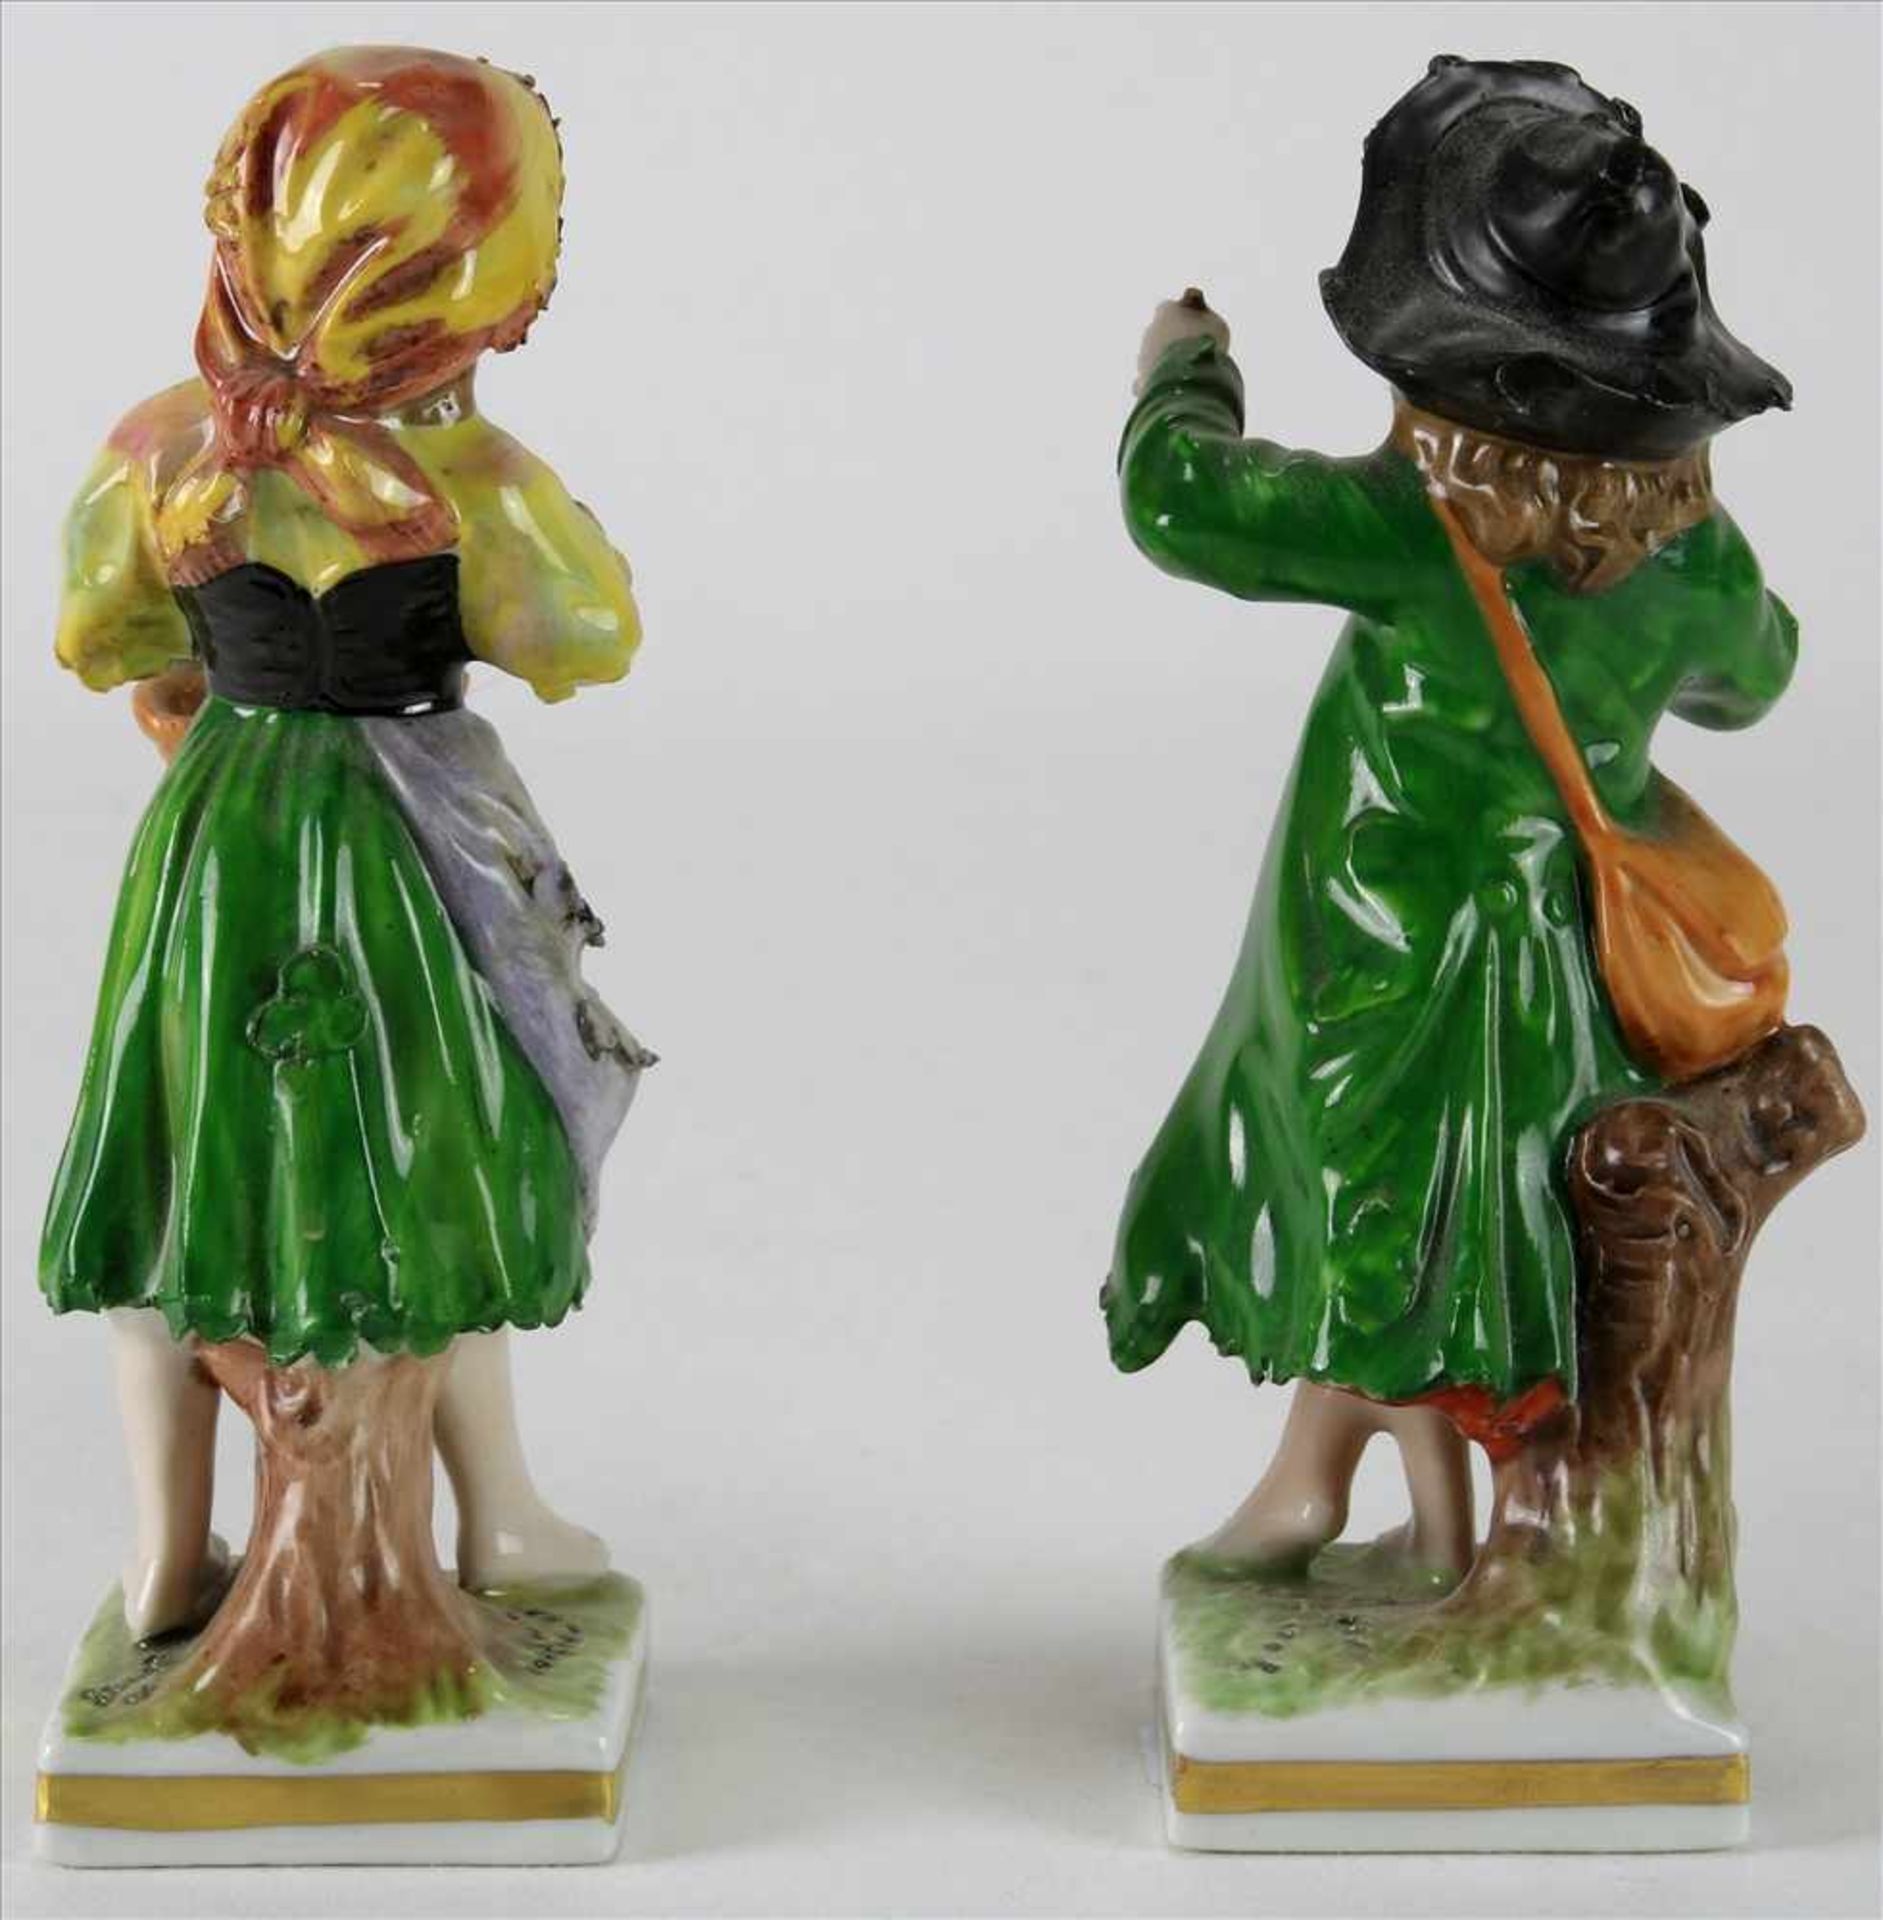 Paar PorzellanfigurenRudolstadt um 1900. Junge mit Äpfeln und Mädchen mit Korb. Polychrome Staffage. - Image 2 of 5